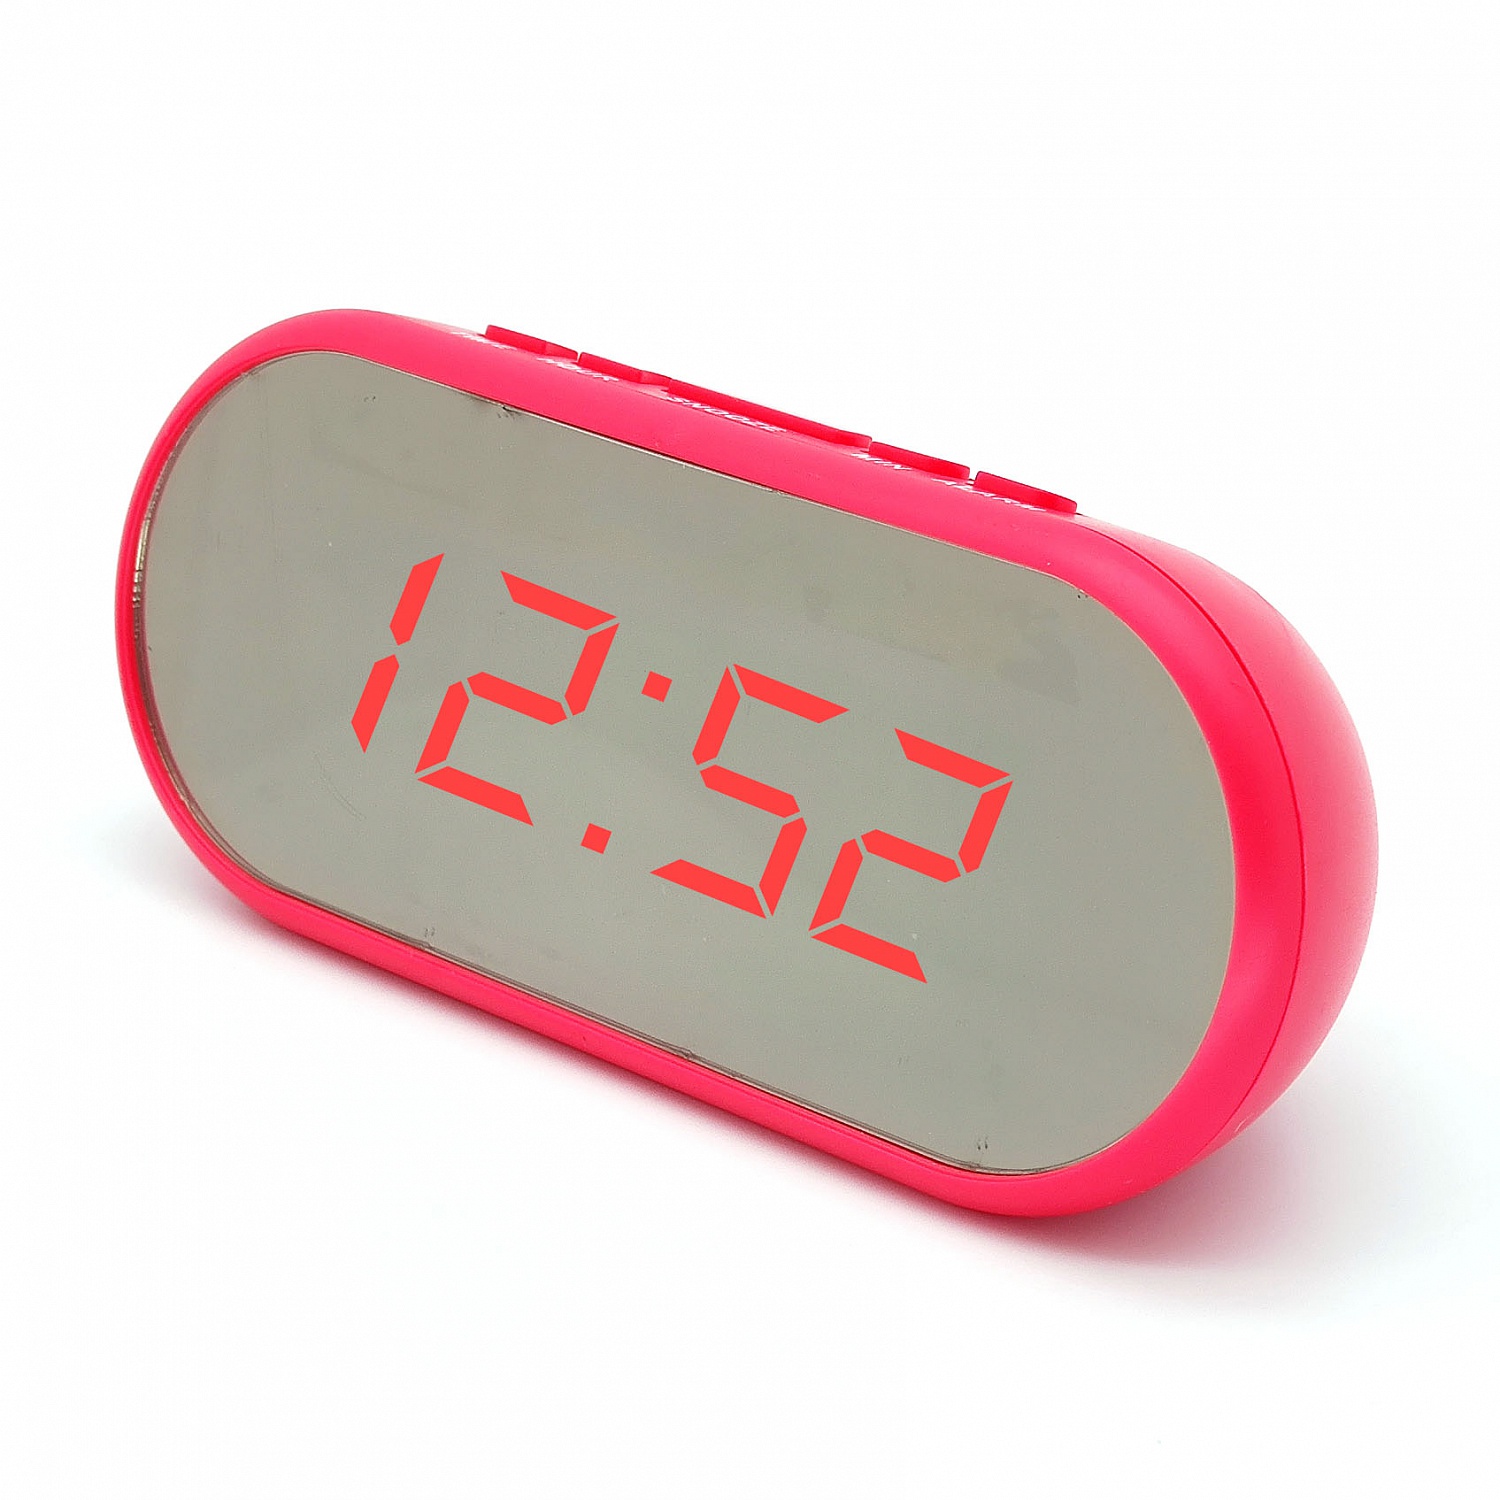 часы настольные VST-712Y-1 розовый корпус (красные цифры) (без блока, питание от USB)